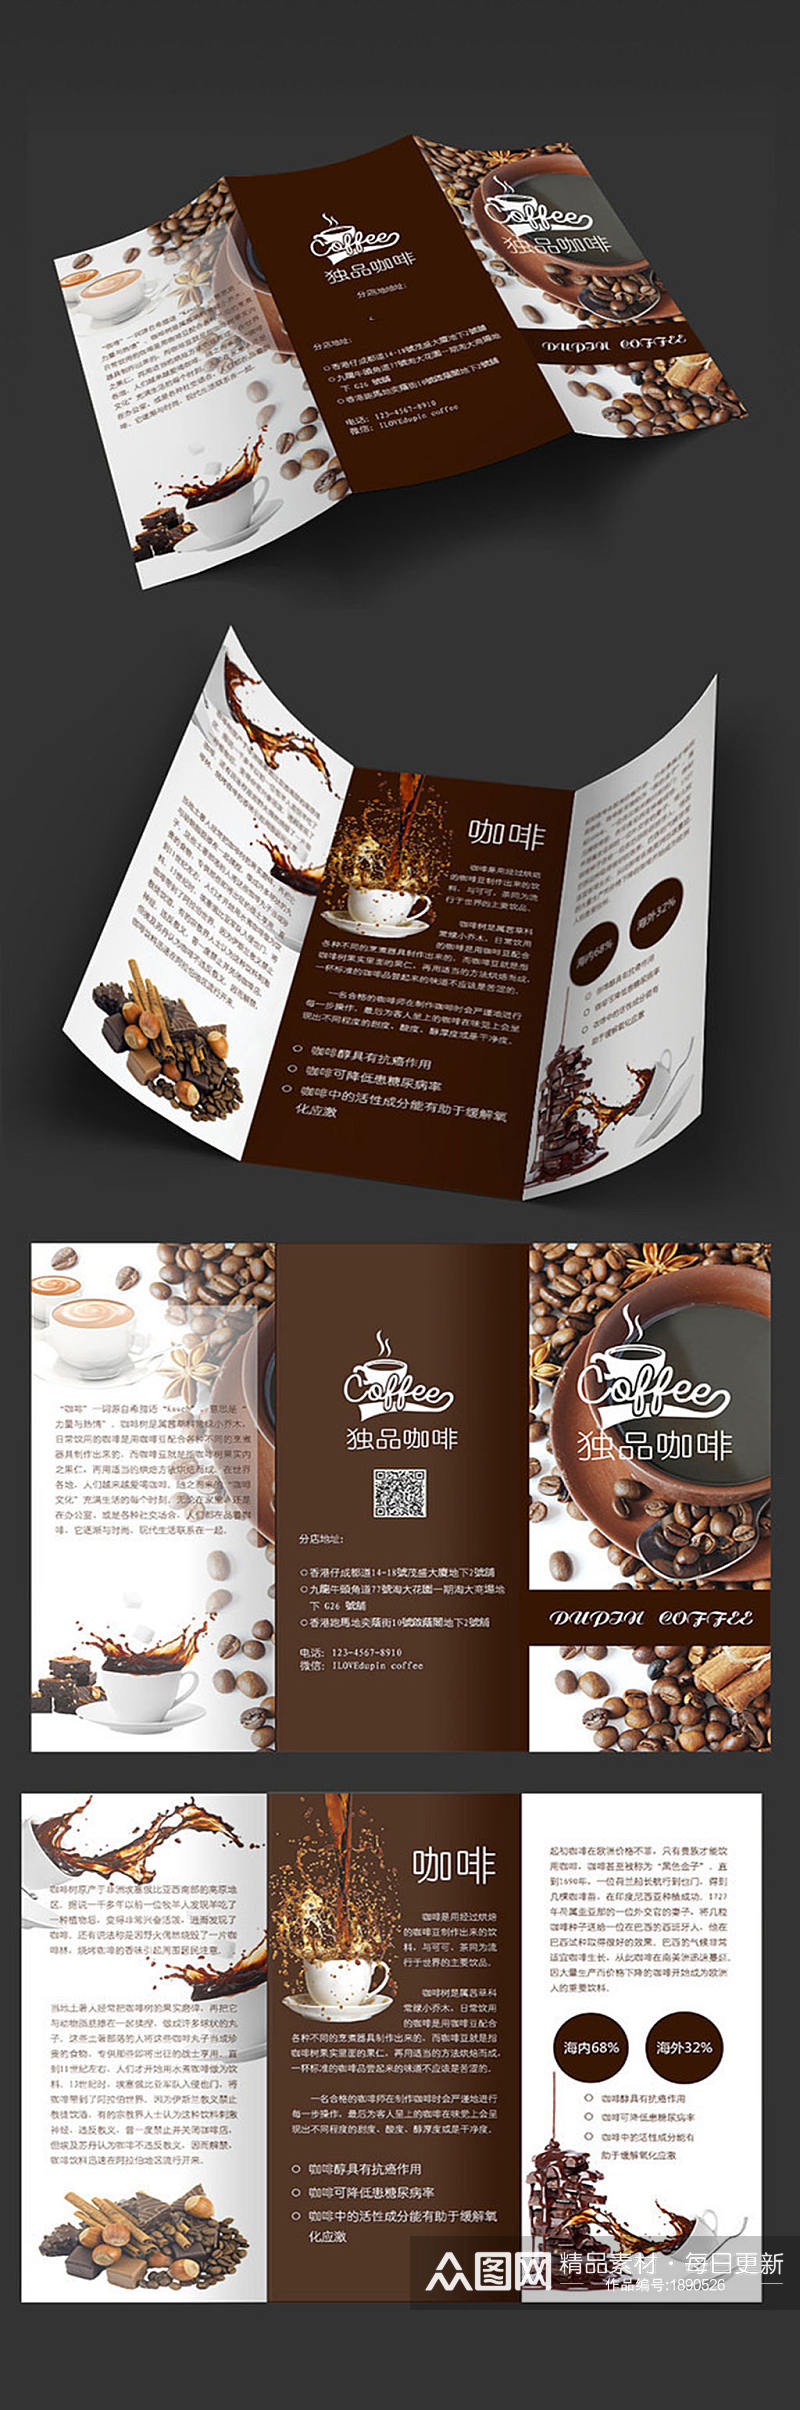 经典咖啡折页设计素材